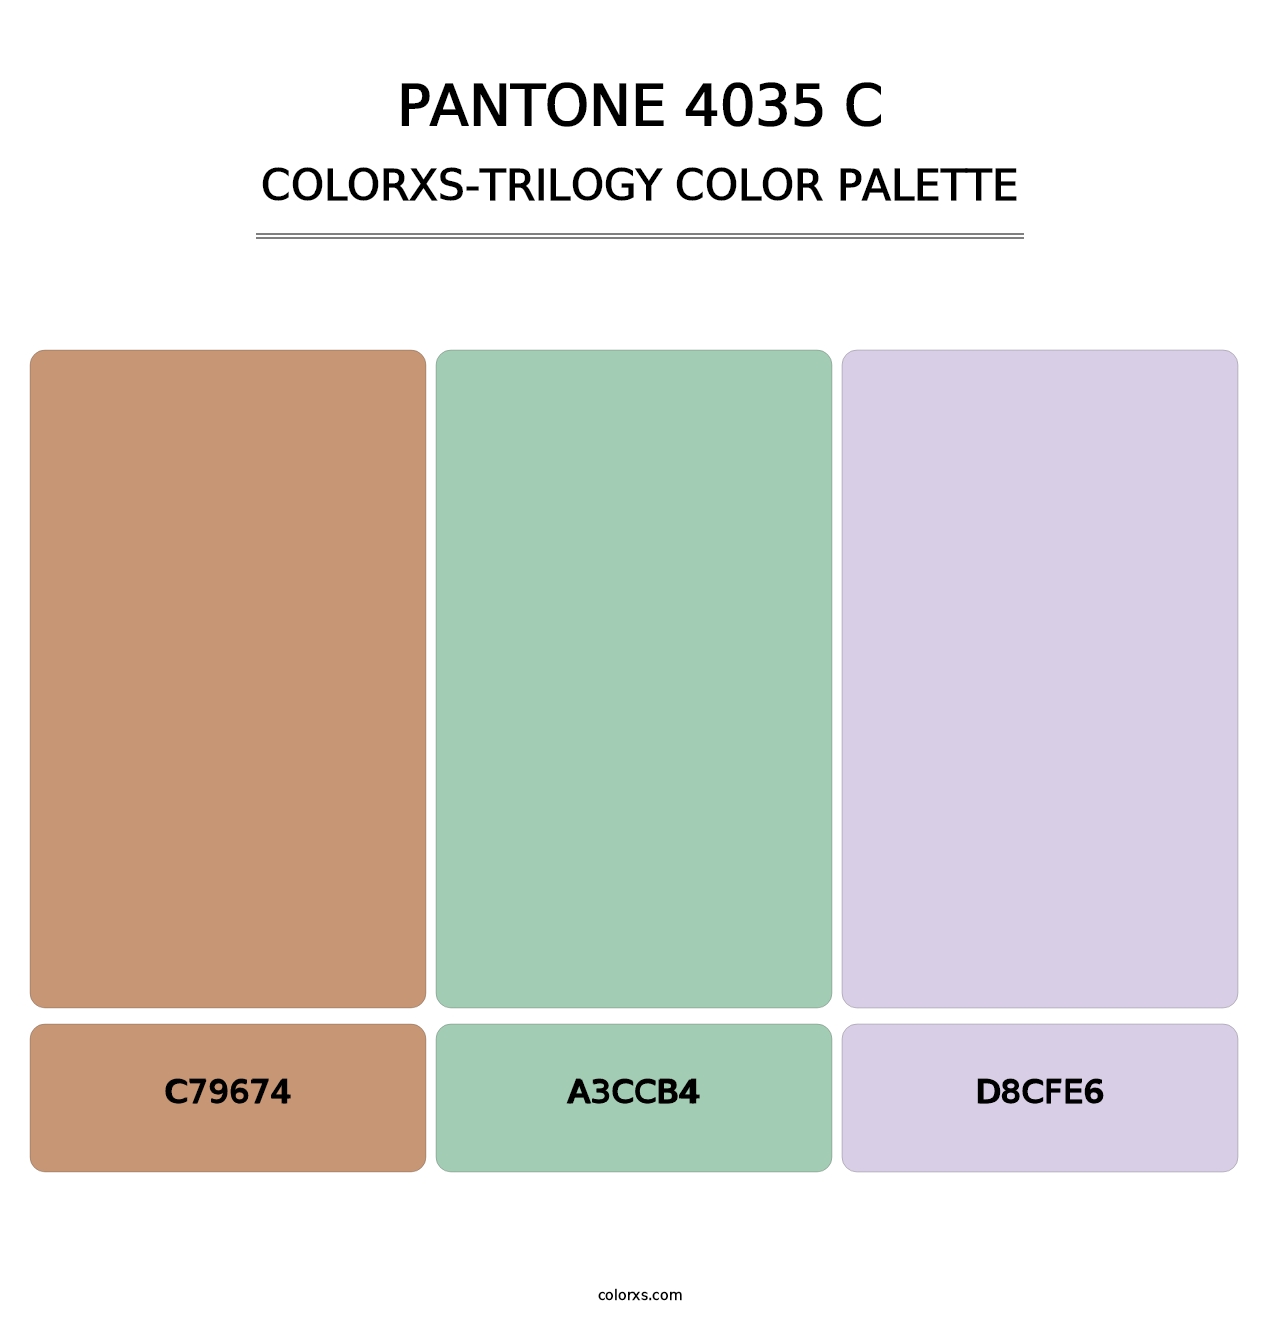 PANTONE 4035 C - Colorxs Trilogy Palette